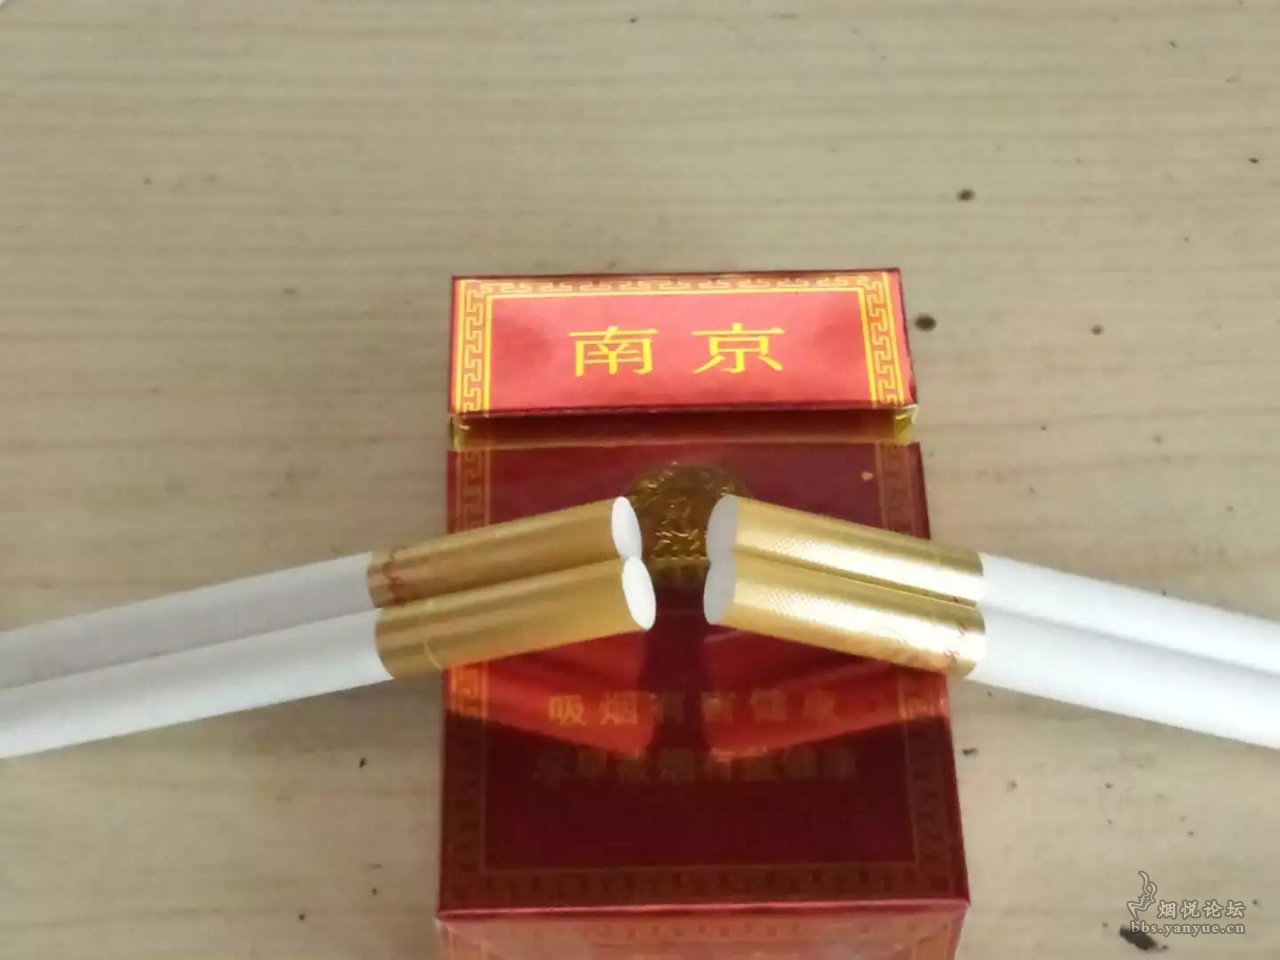 20元一盒的南京烟图片